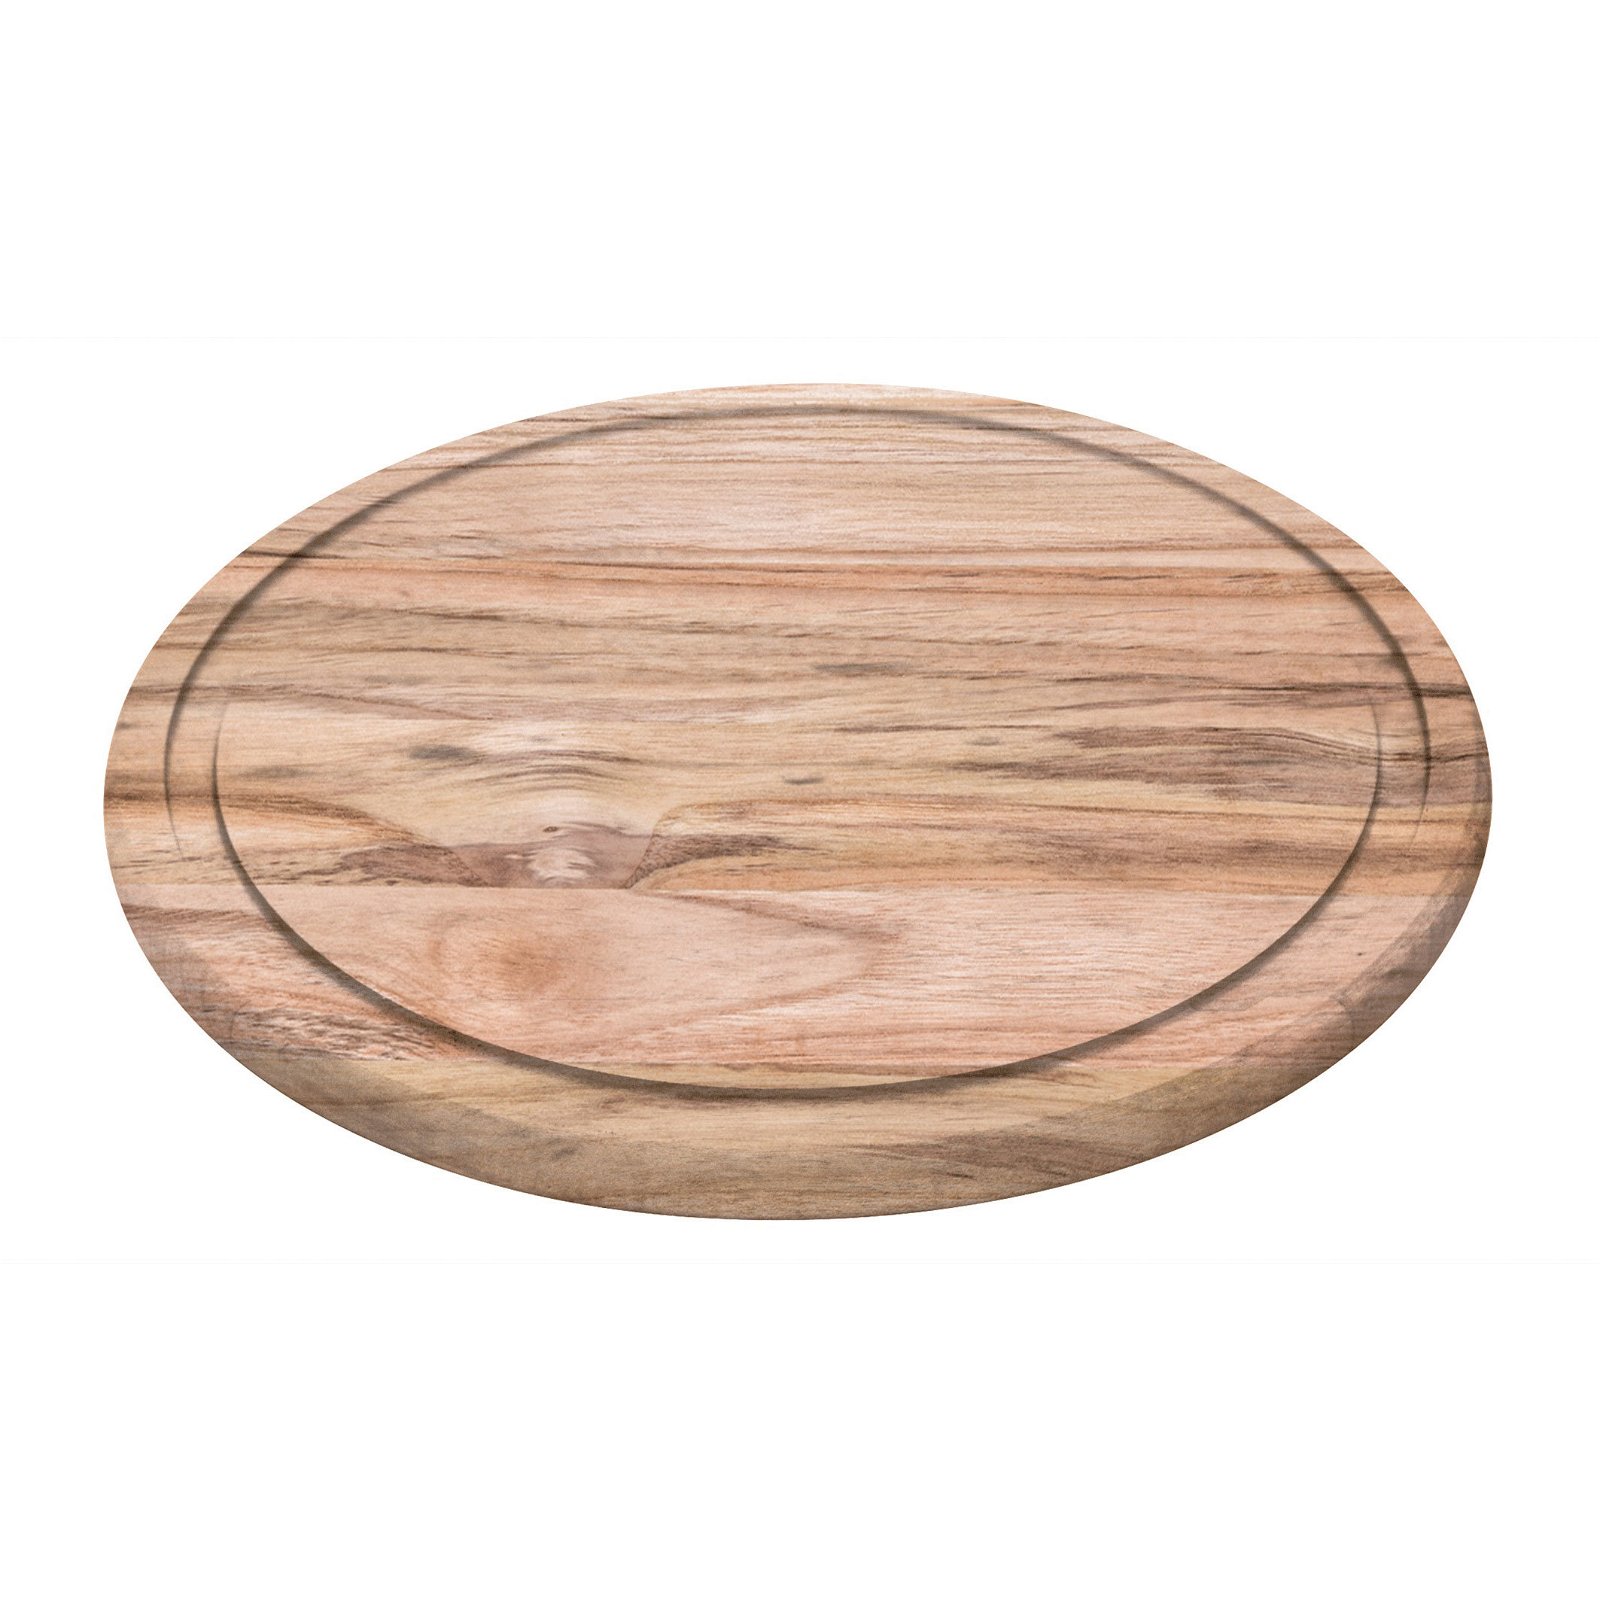 Teak-Holz Steak & Servierplatte von TRAMONTINA CHURRASCO, Durchmesser ca. 26 cm, Höhe 1,5 cm